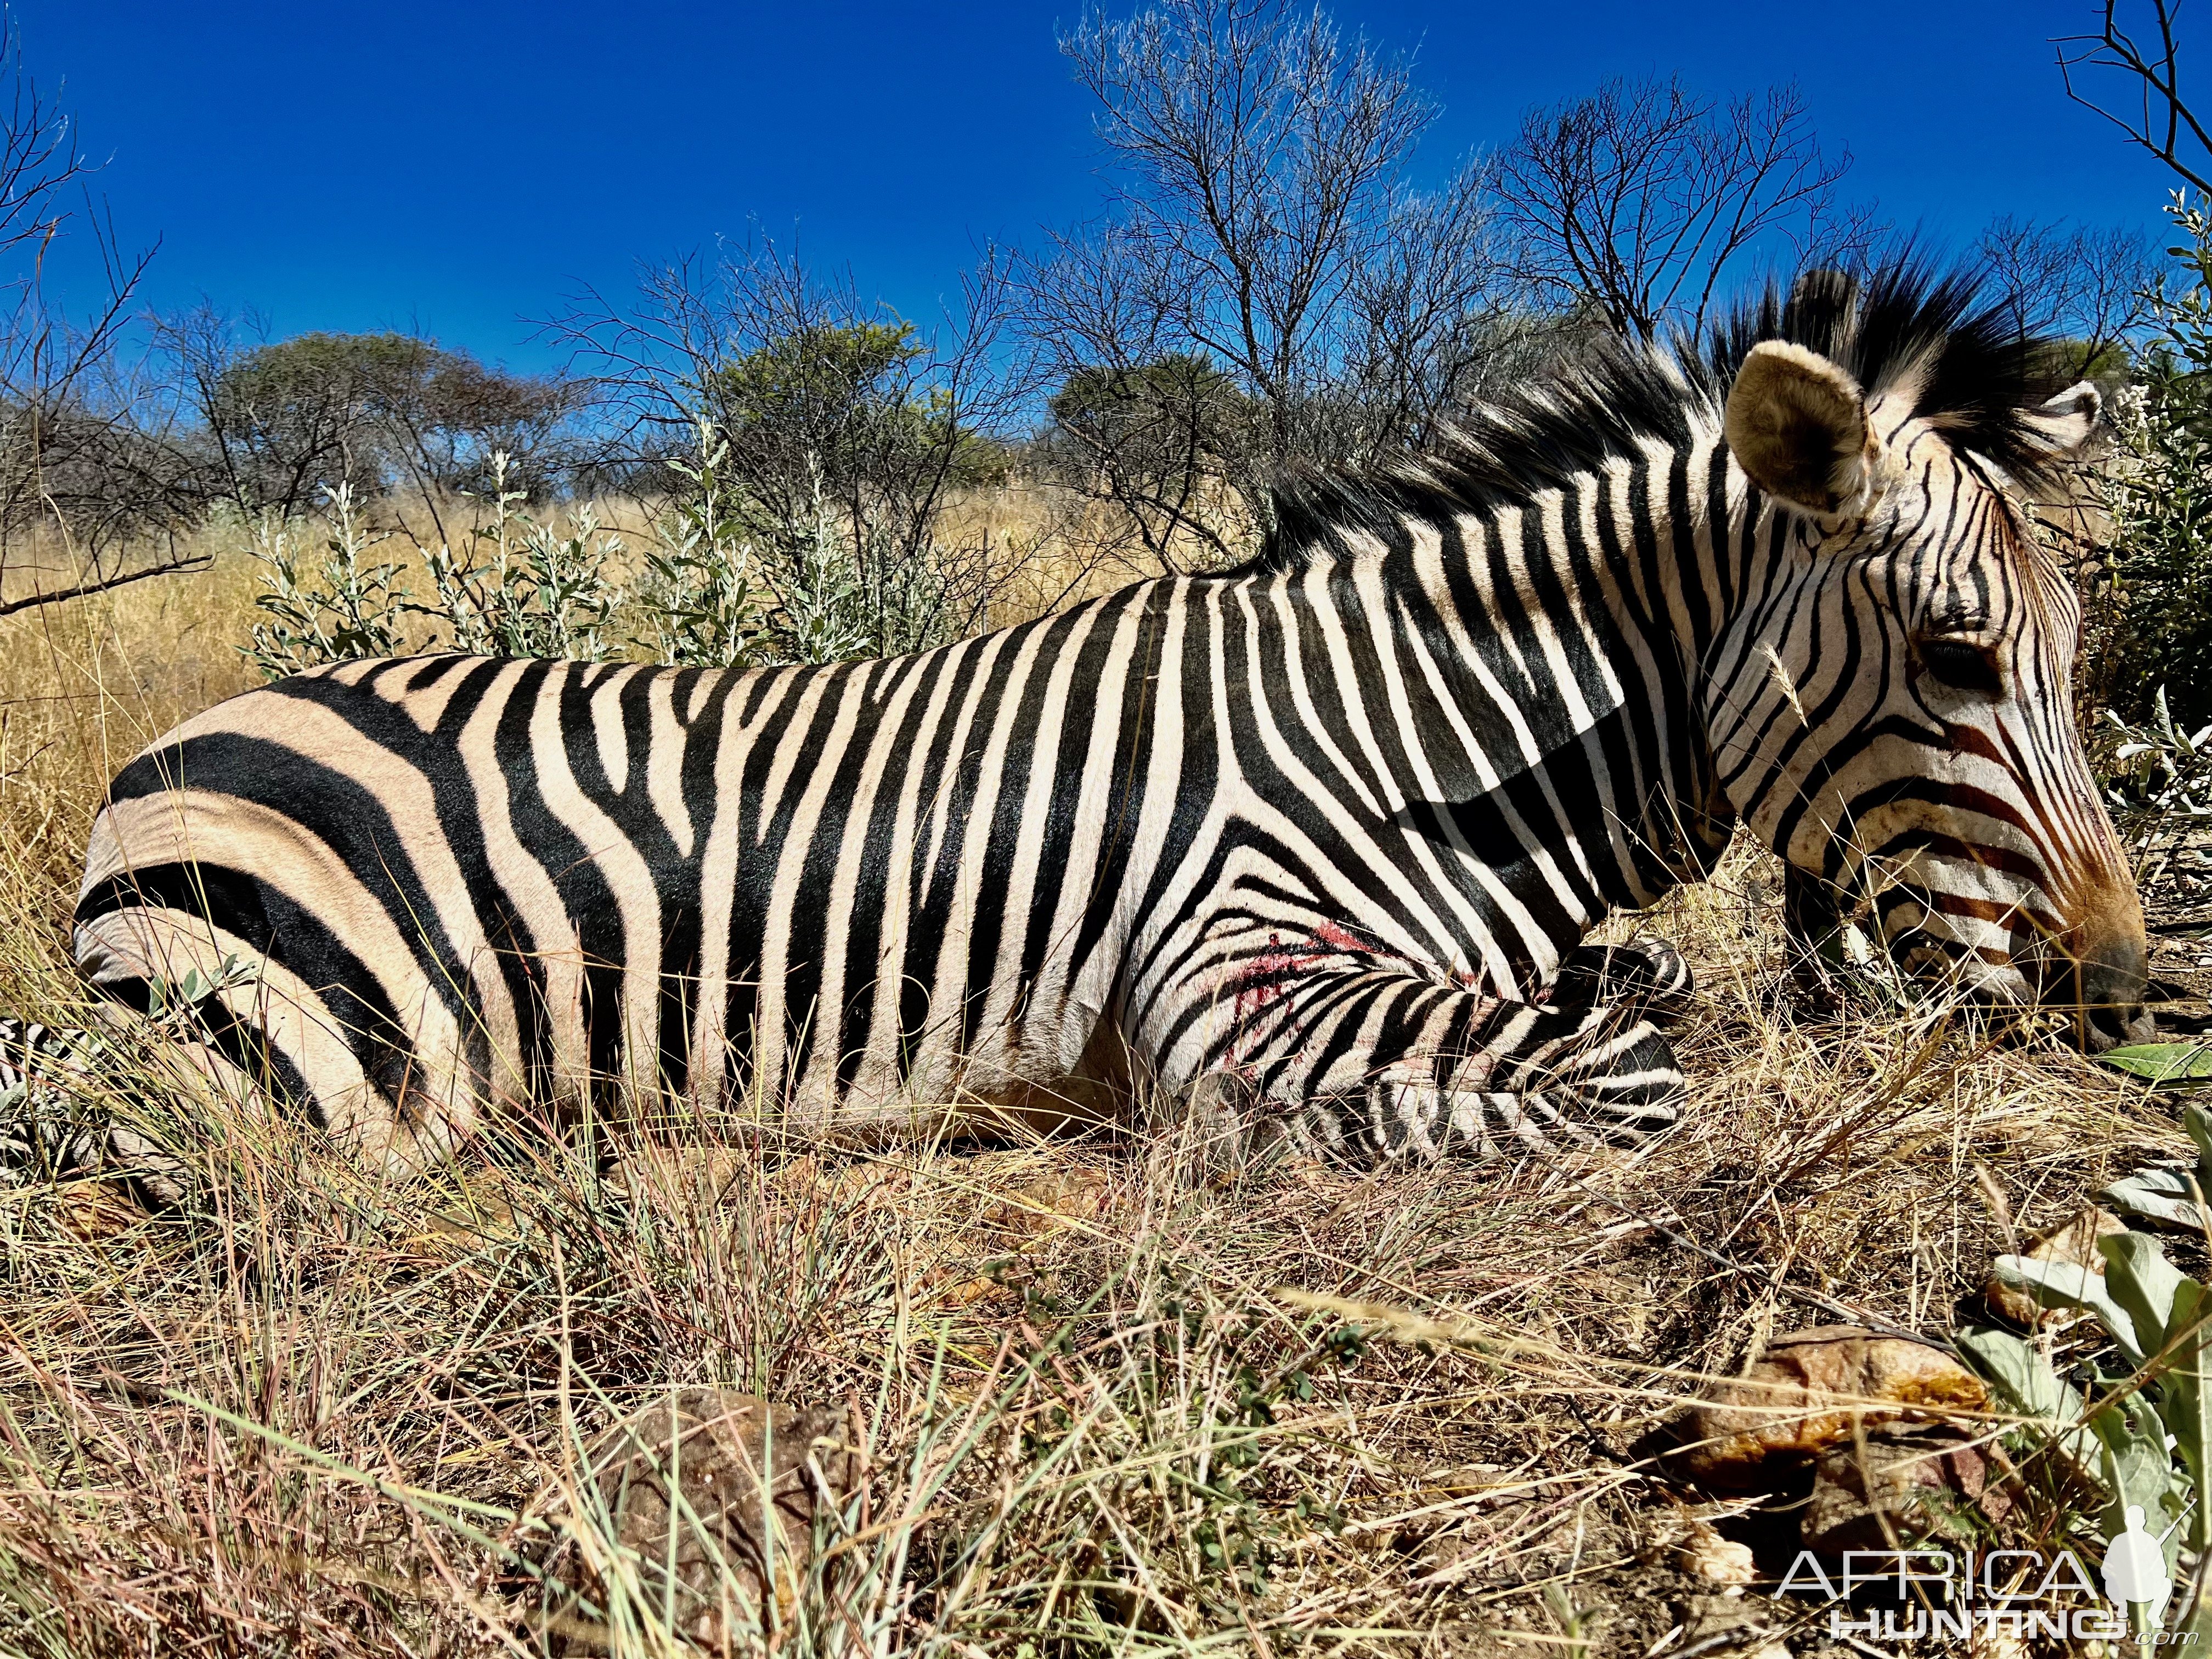 Hartmann Zebra with Zana Botes Safari